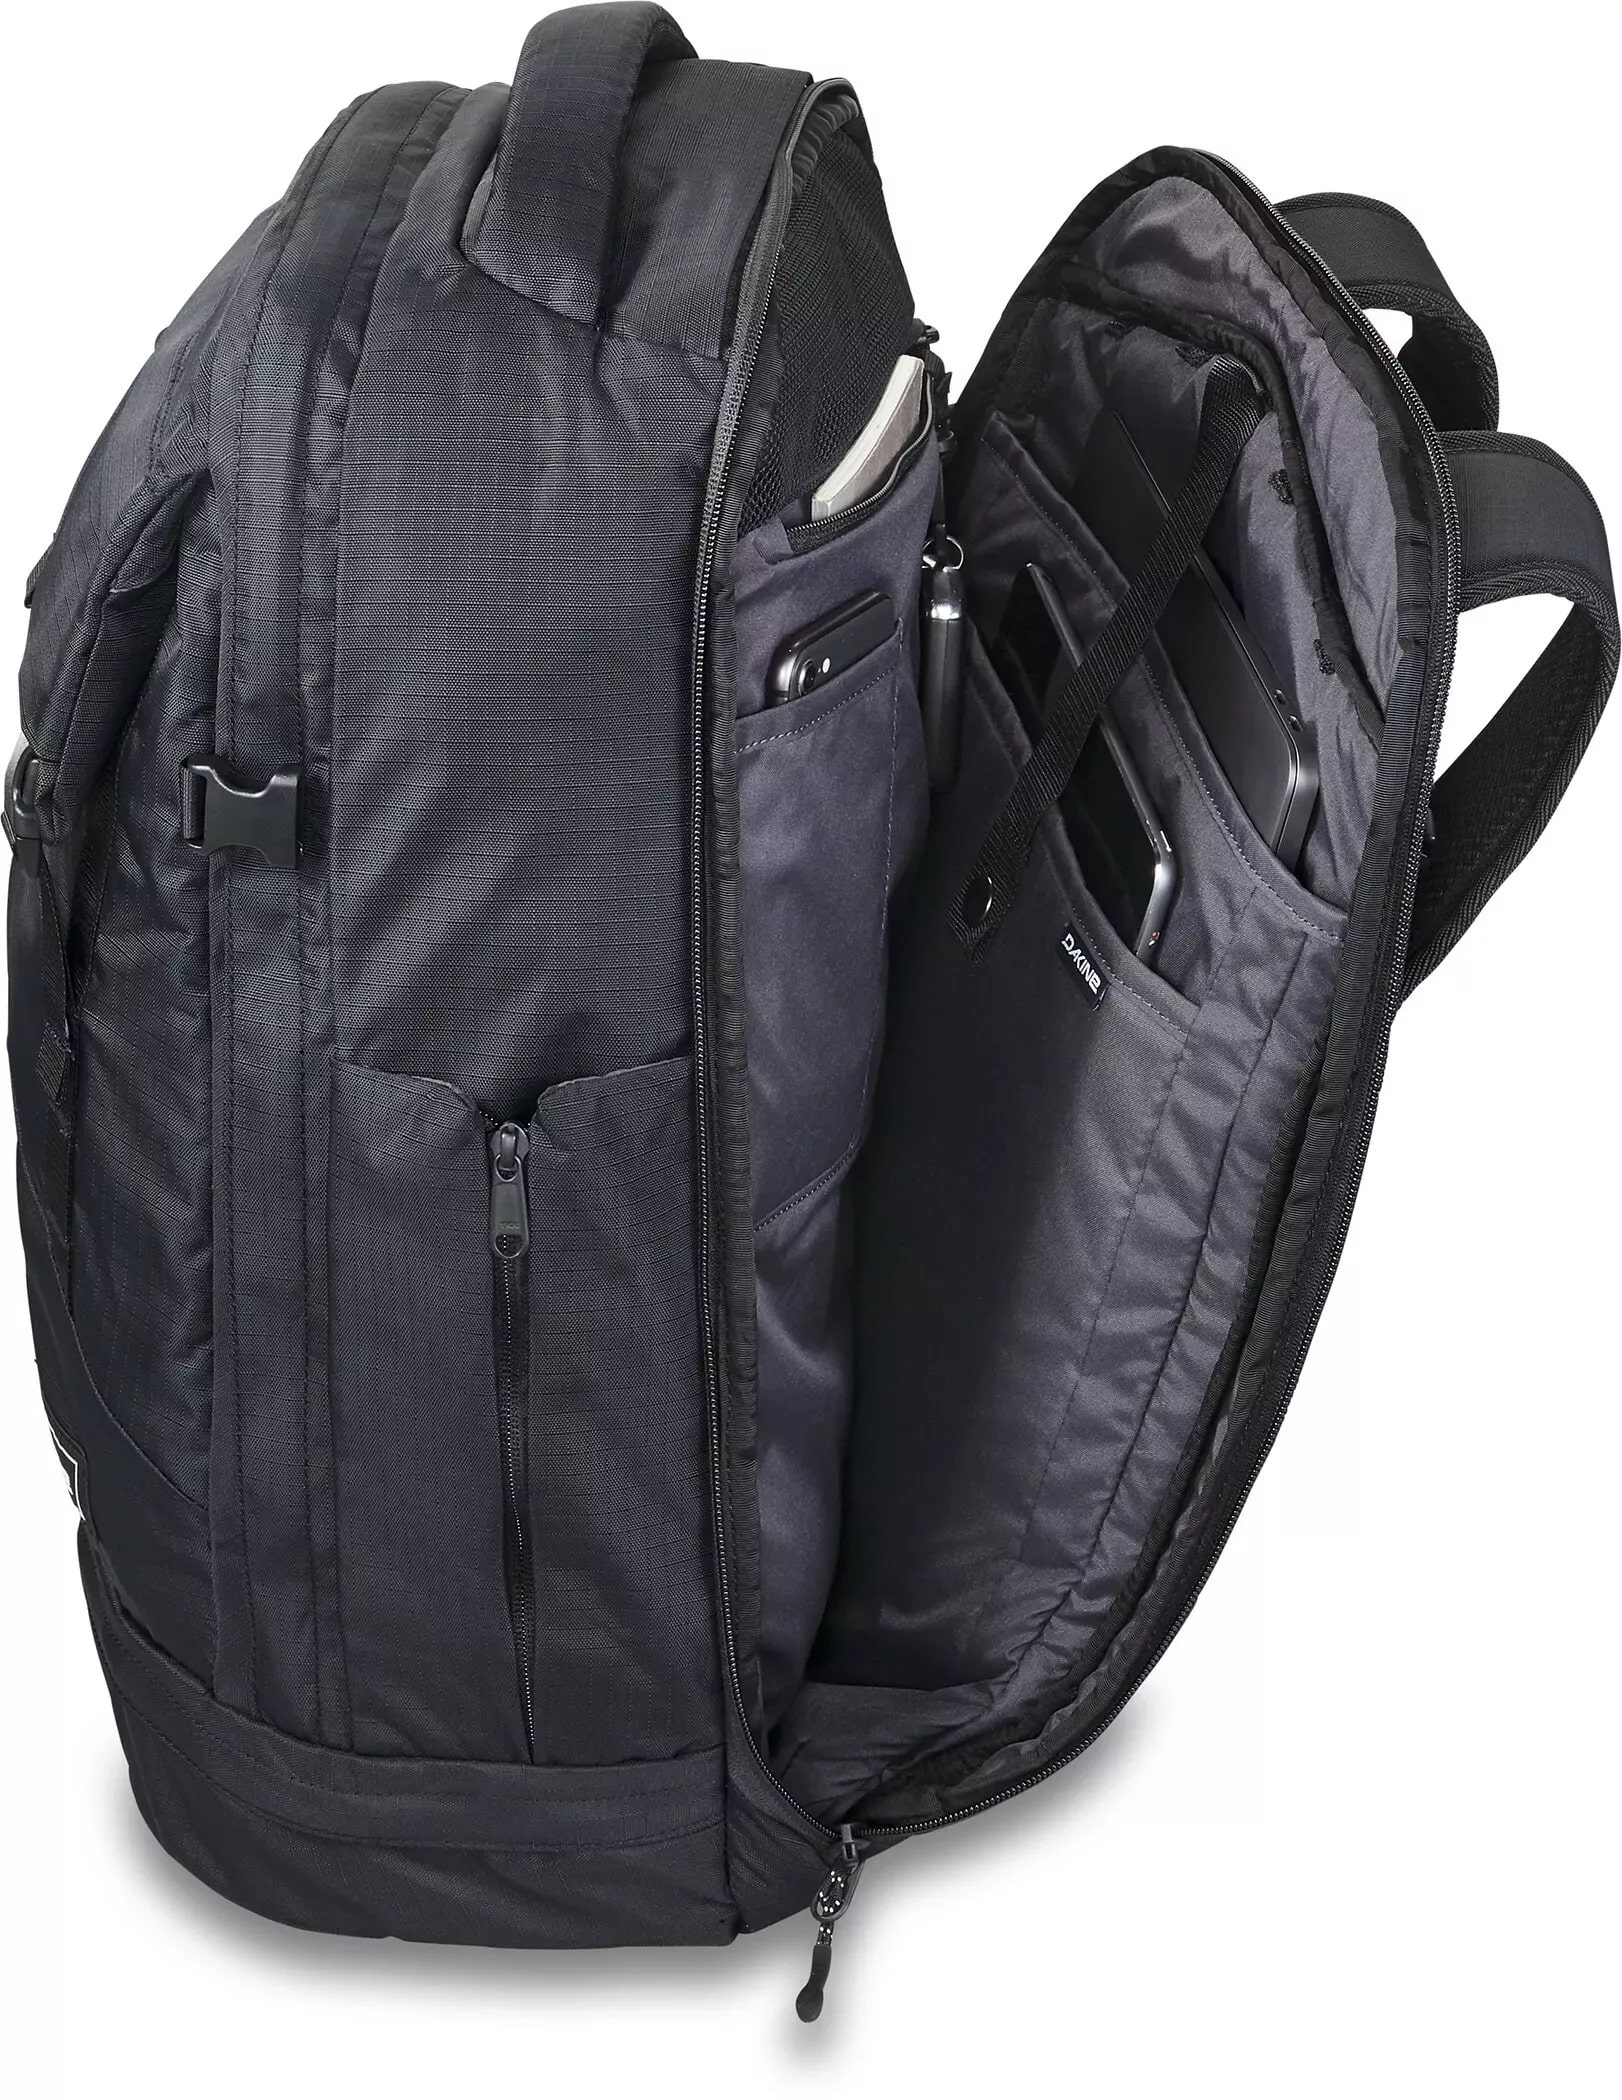 DaKine Verge Backpack 32L